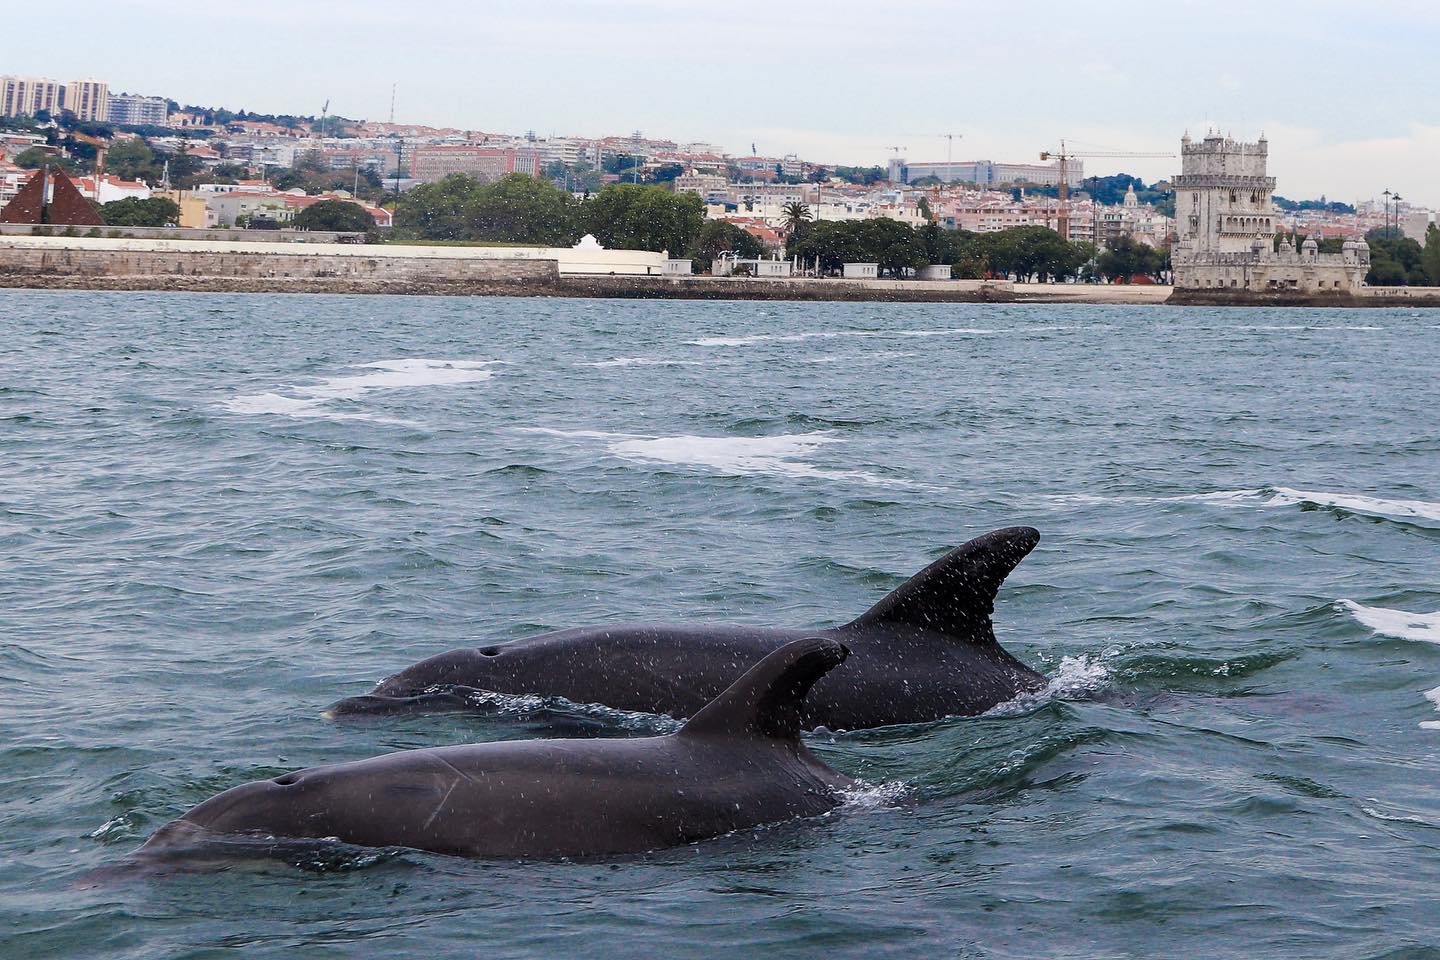 Regresso de vrias dezenas de golfinhos s guas do rio Tejo, em Lisboa. Foto: Terra Incgnita